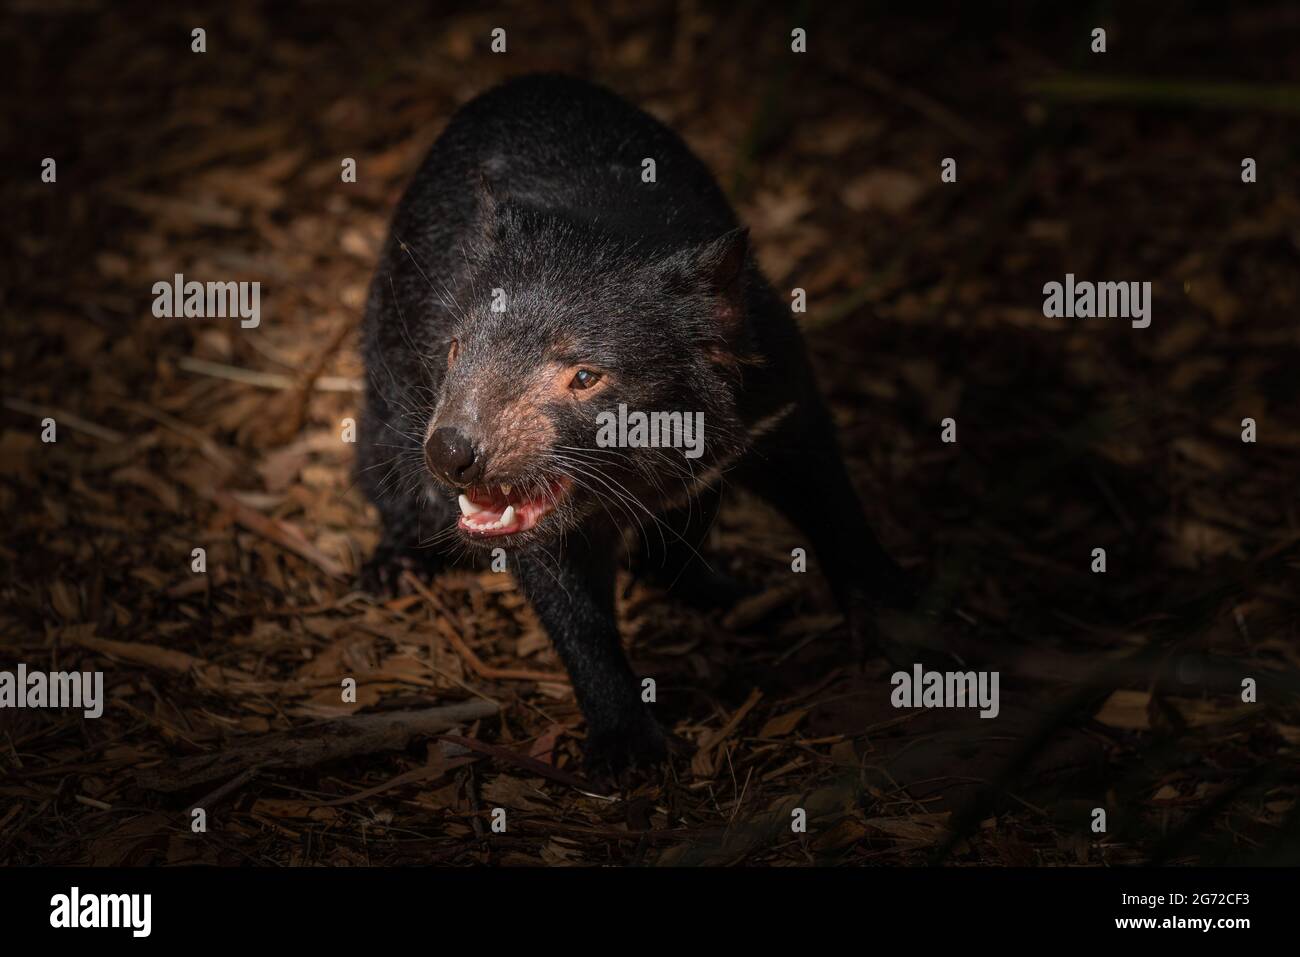 Gros plan sur un diable de Tasmanie, un marsupial carnivore en voie de disparition. Banque D'Images